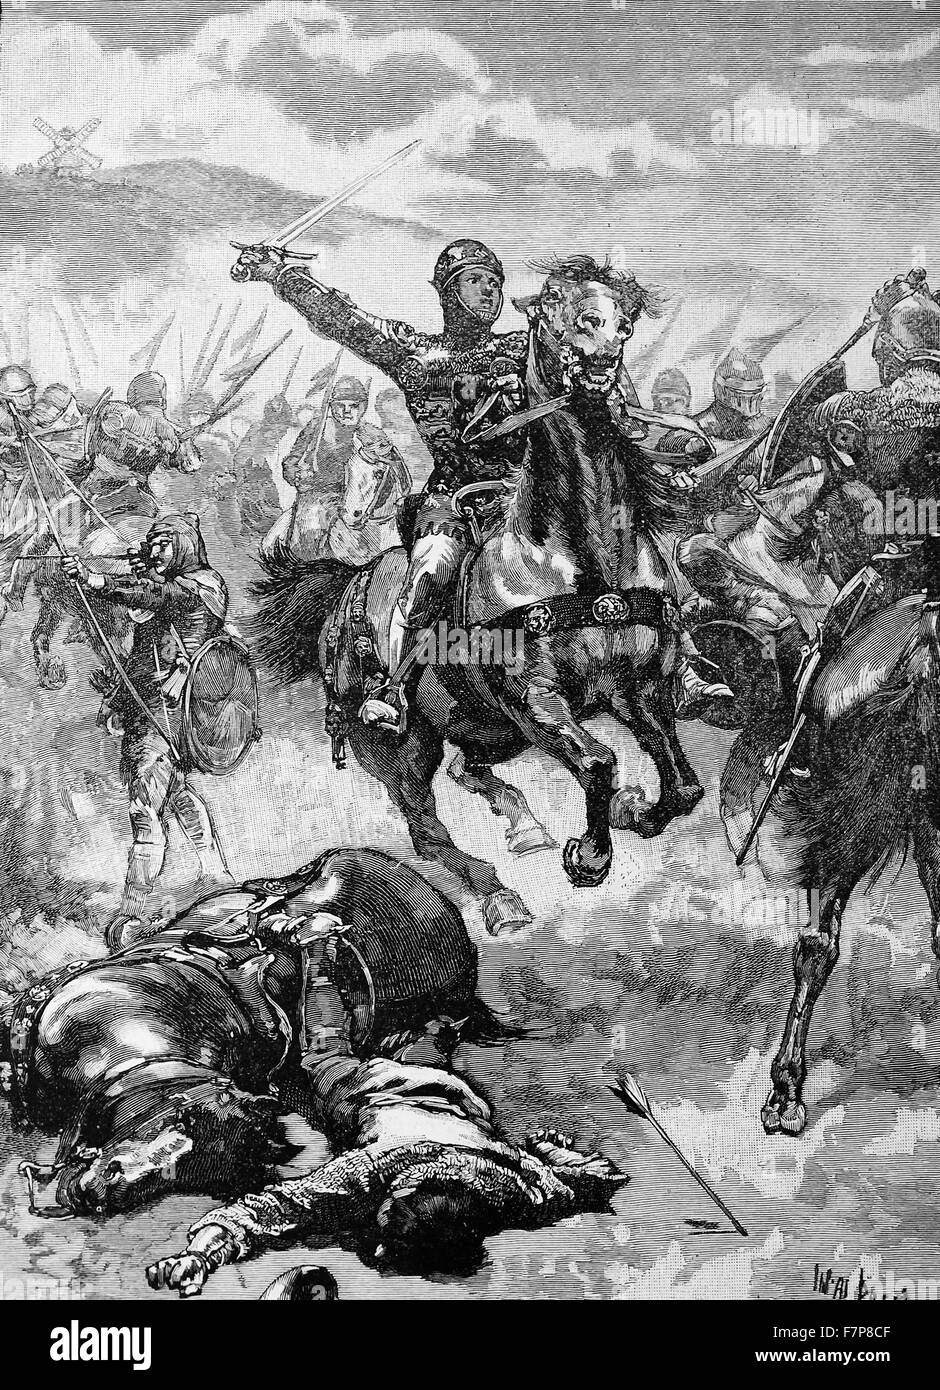 Le prince noir (1330-76) commandant le droit de vent les troupes anglaises à la bataille de Crécy, 1346, lorsqu'il n'avait que 16 ans. Guerre de Cent Ans entre la France et l'Angleterre. Banque D'Images